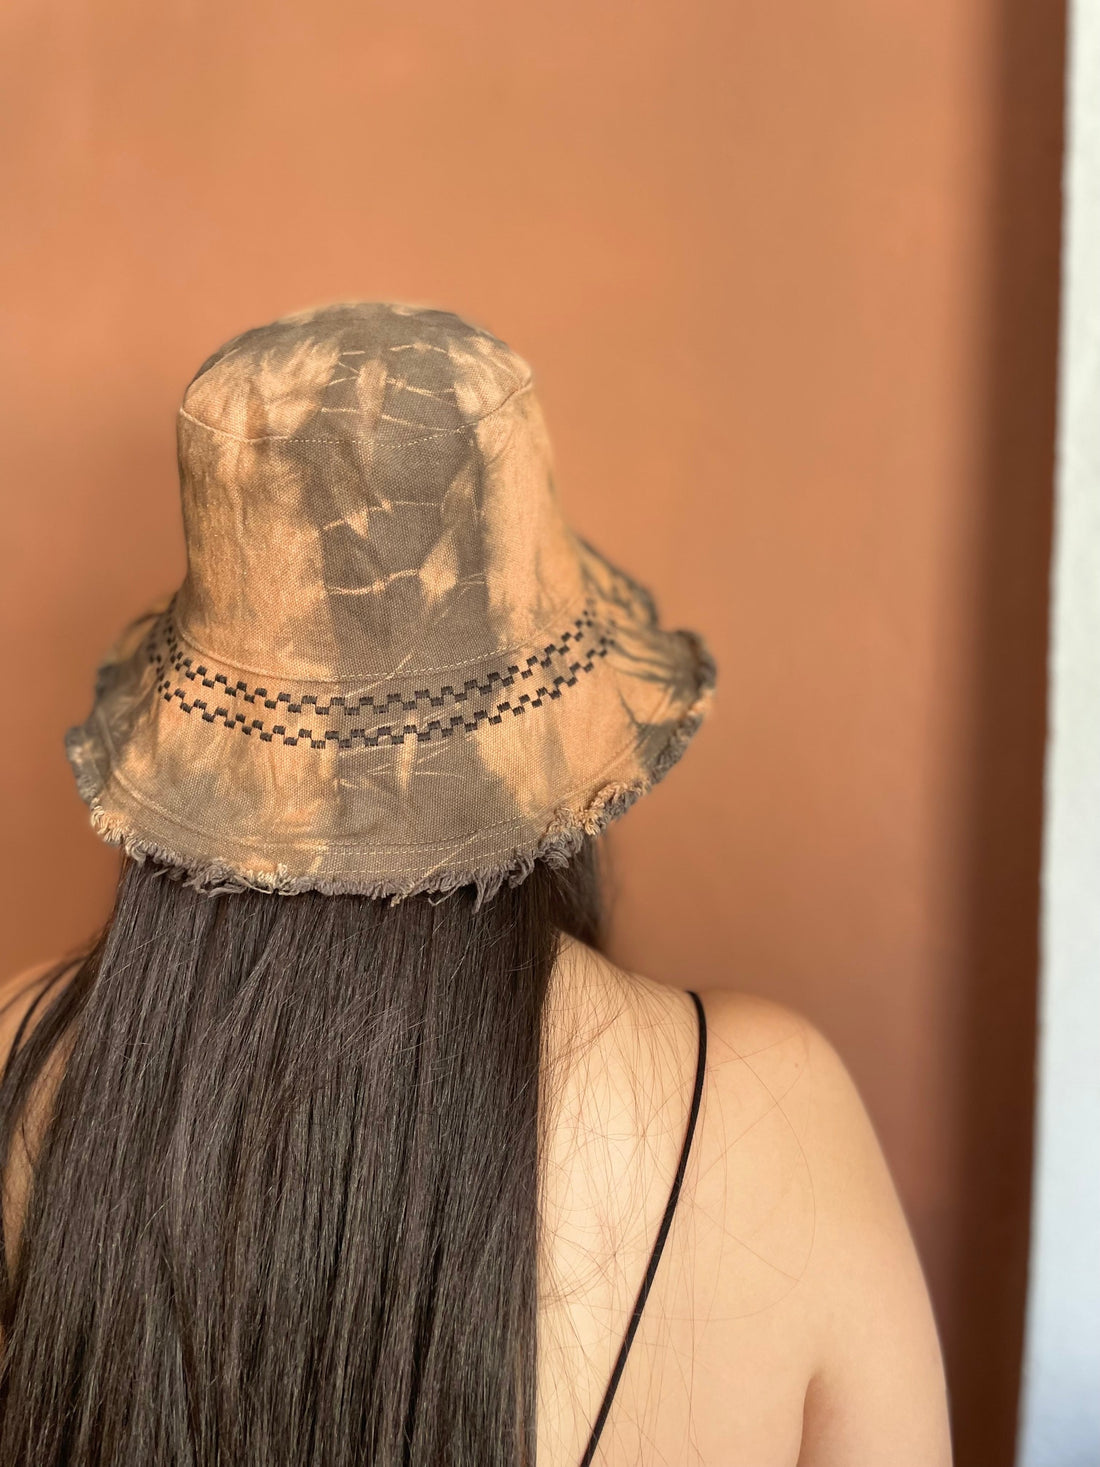 כובע אריזונה - חמרה